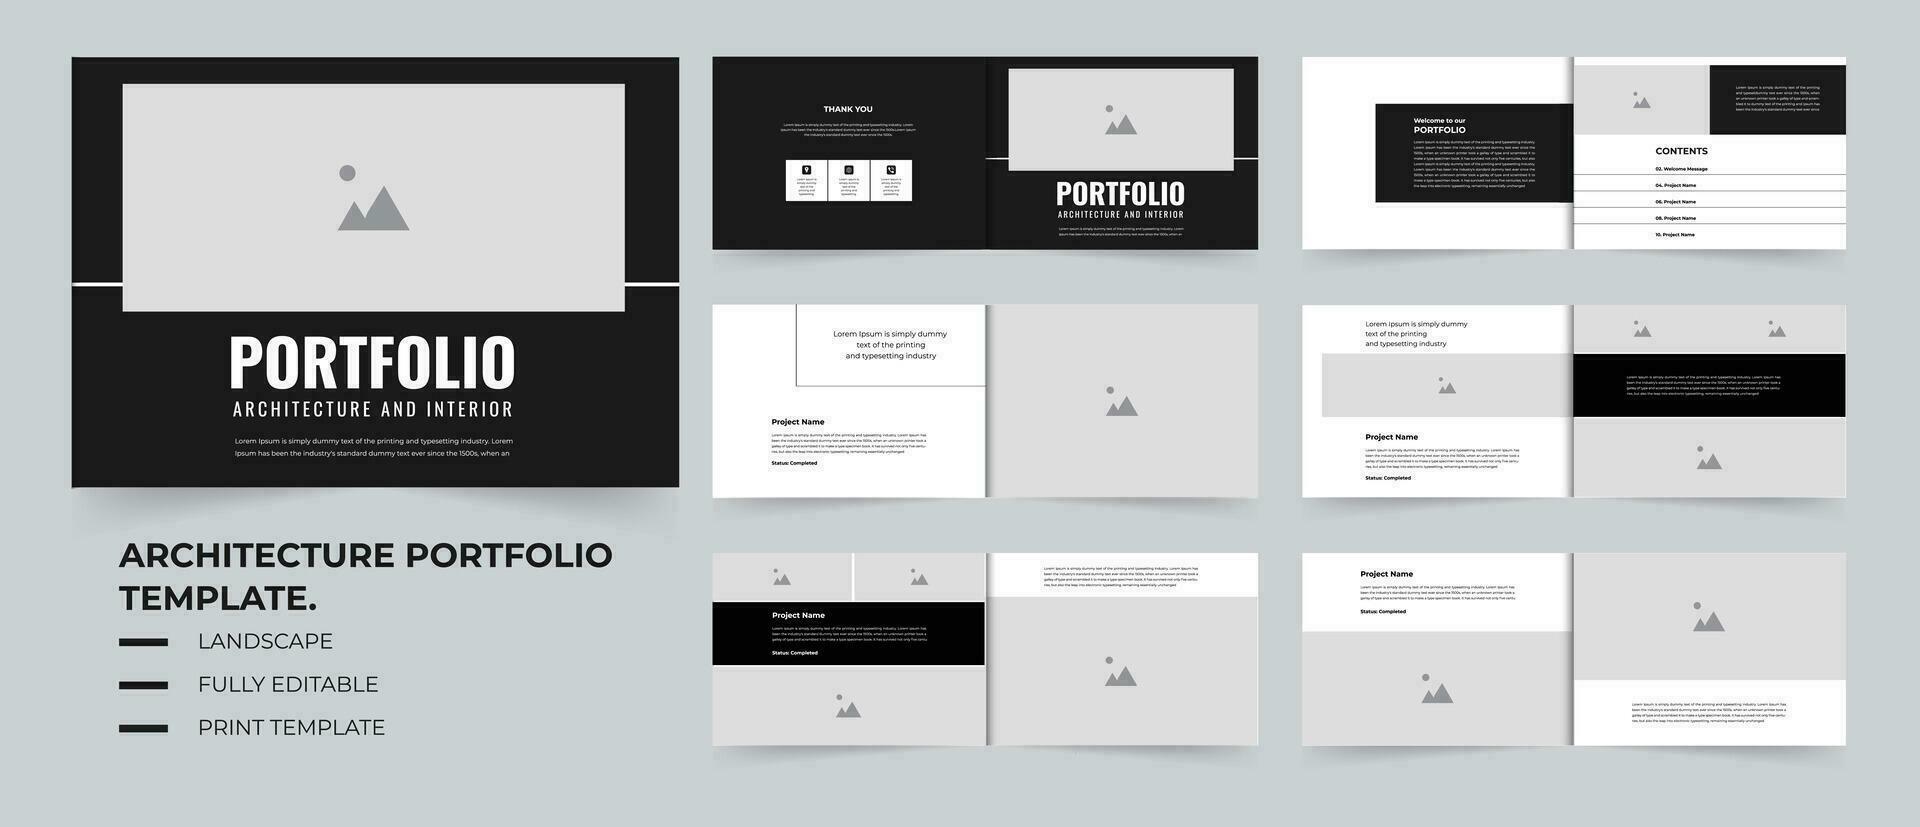 Architecture portfolio A4 landscape or portfolio brochure template design vector